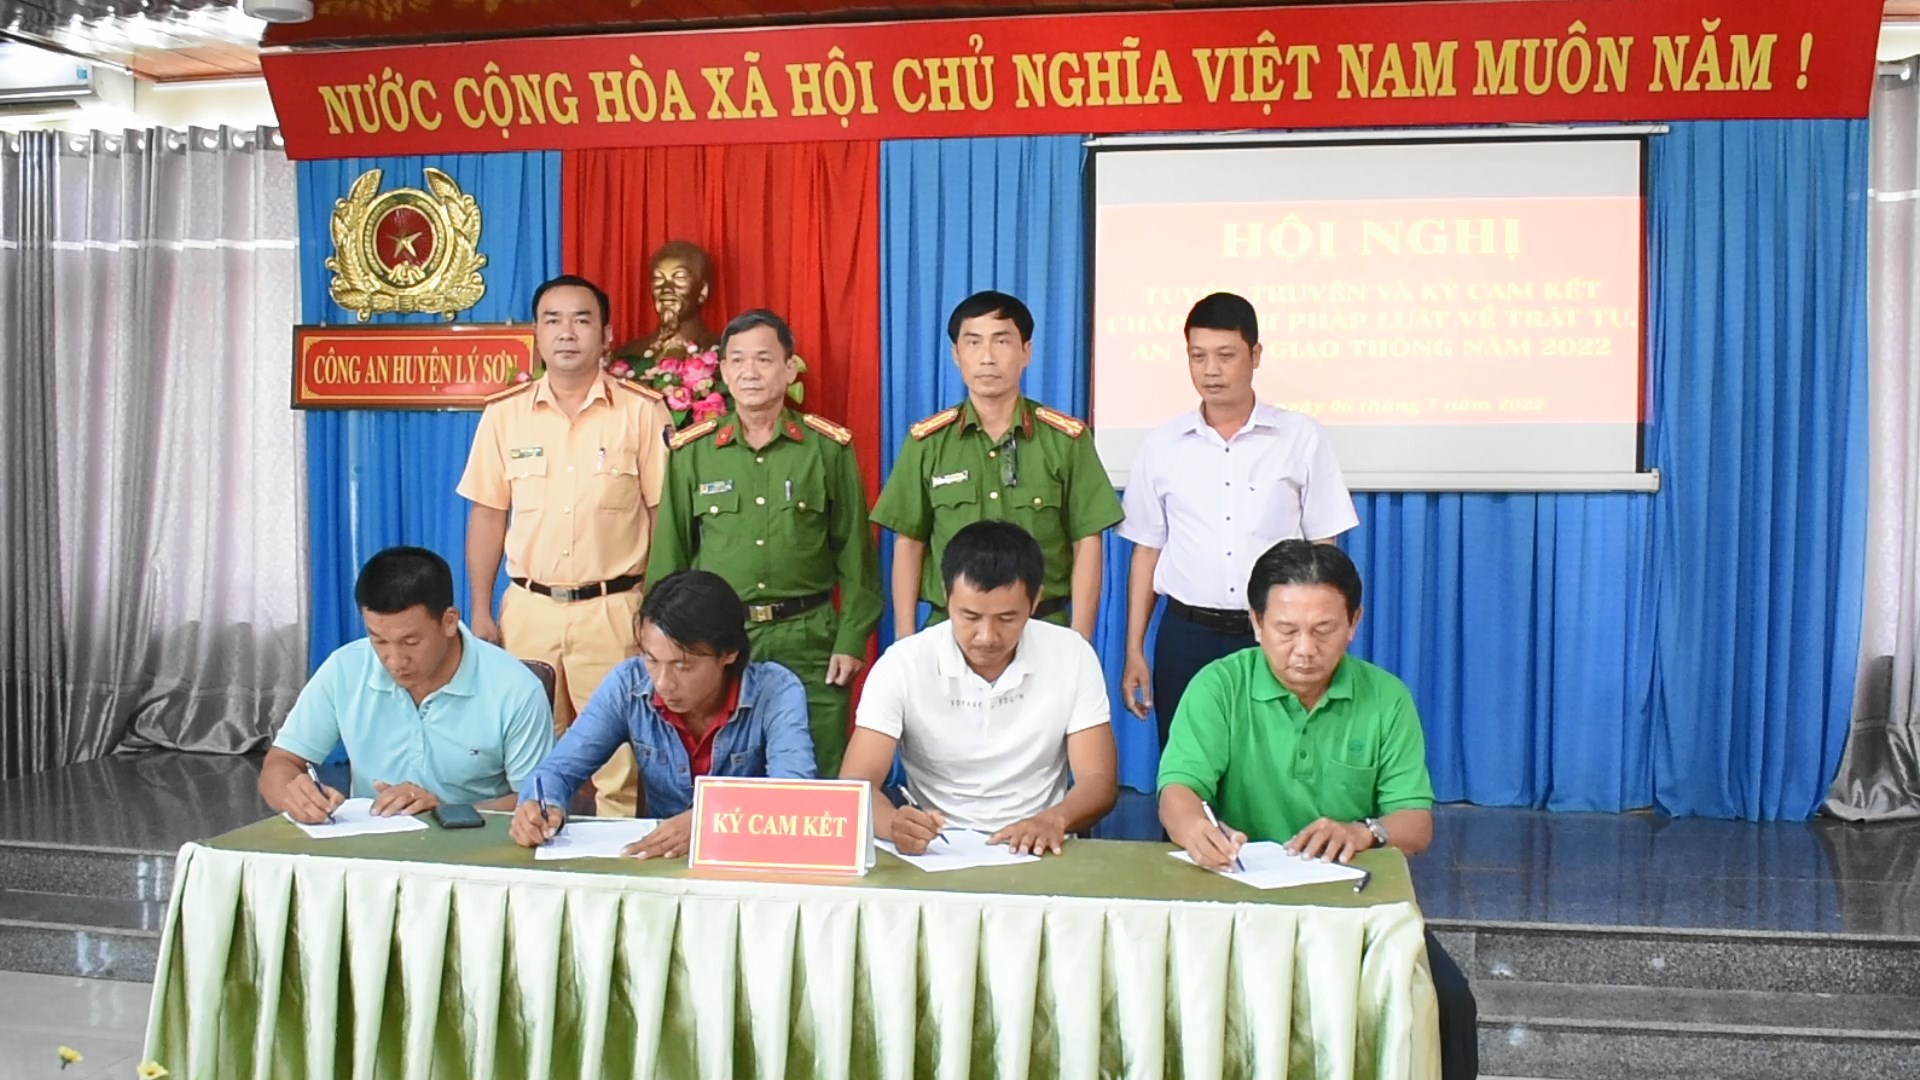 Công an huyện Lý Sơn: Tổ chức Hội nghị tuyên truyền và ký cam kết chấp hành pháp luật về trật tự an toàn giao thông